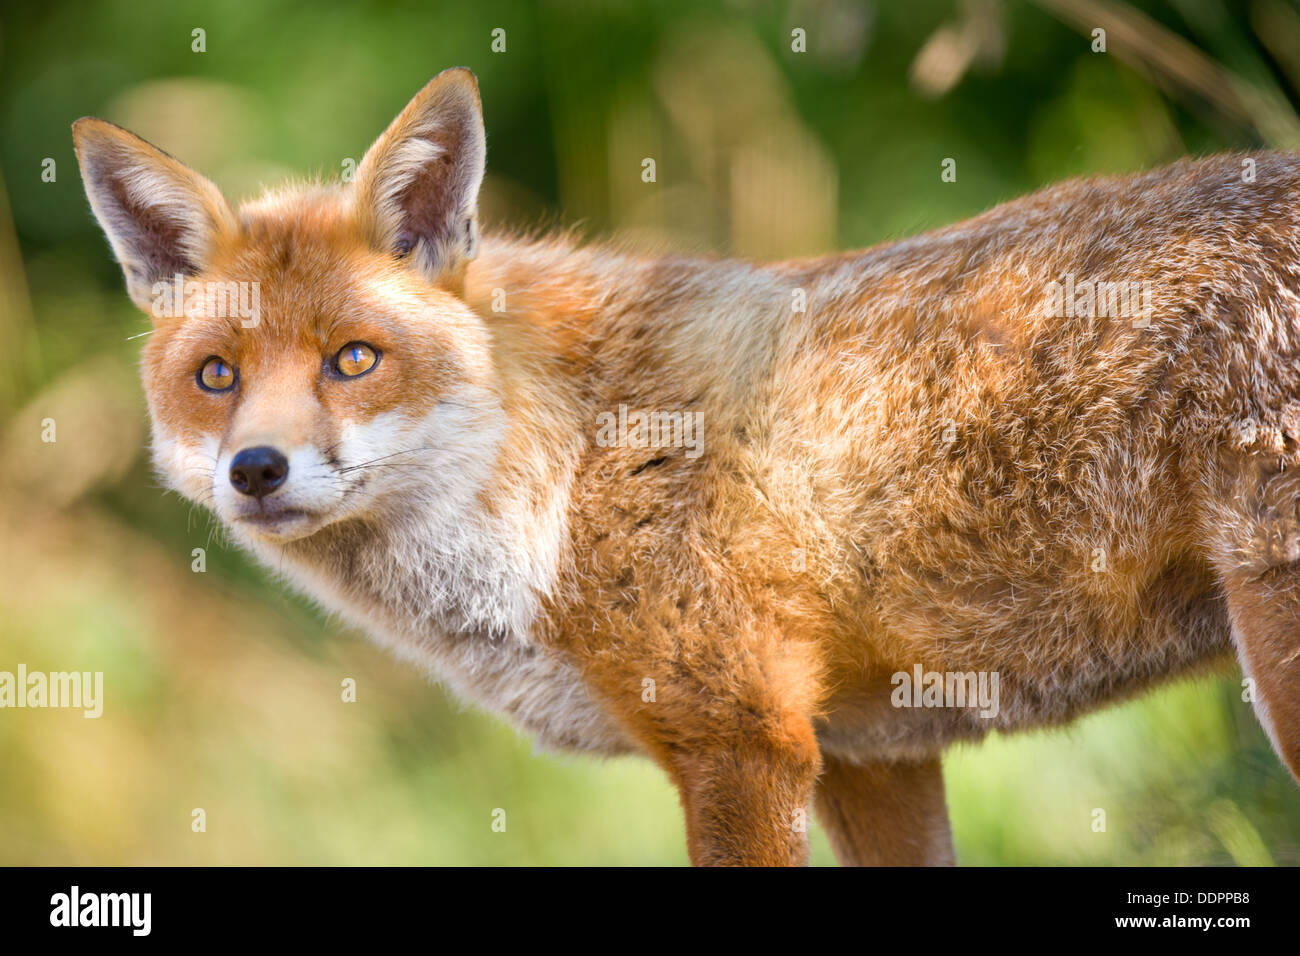 Close up portrait of a European Fox Banque D'Images